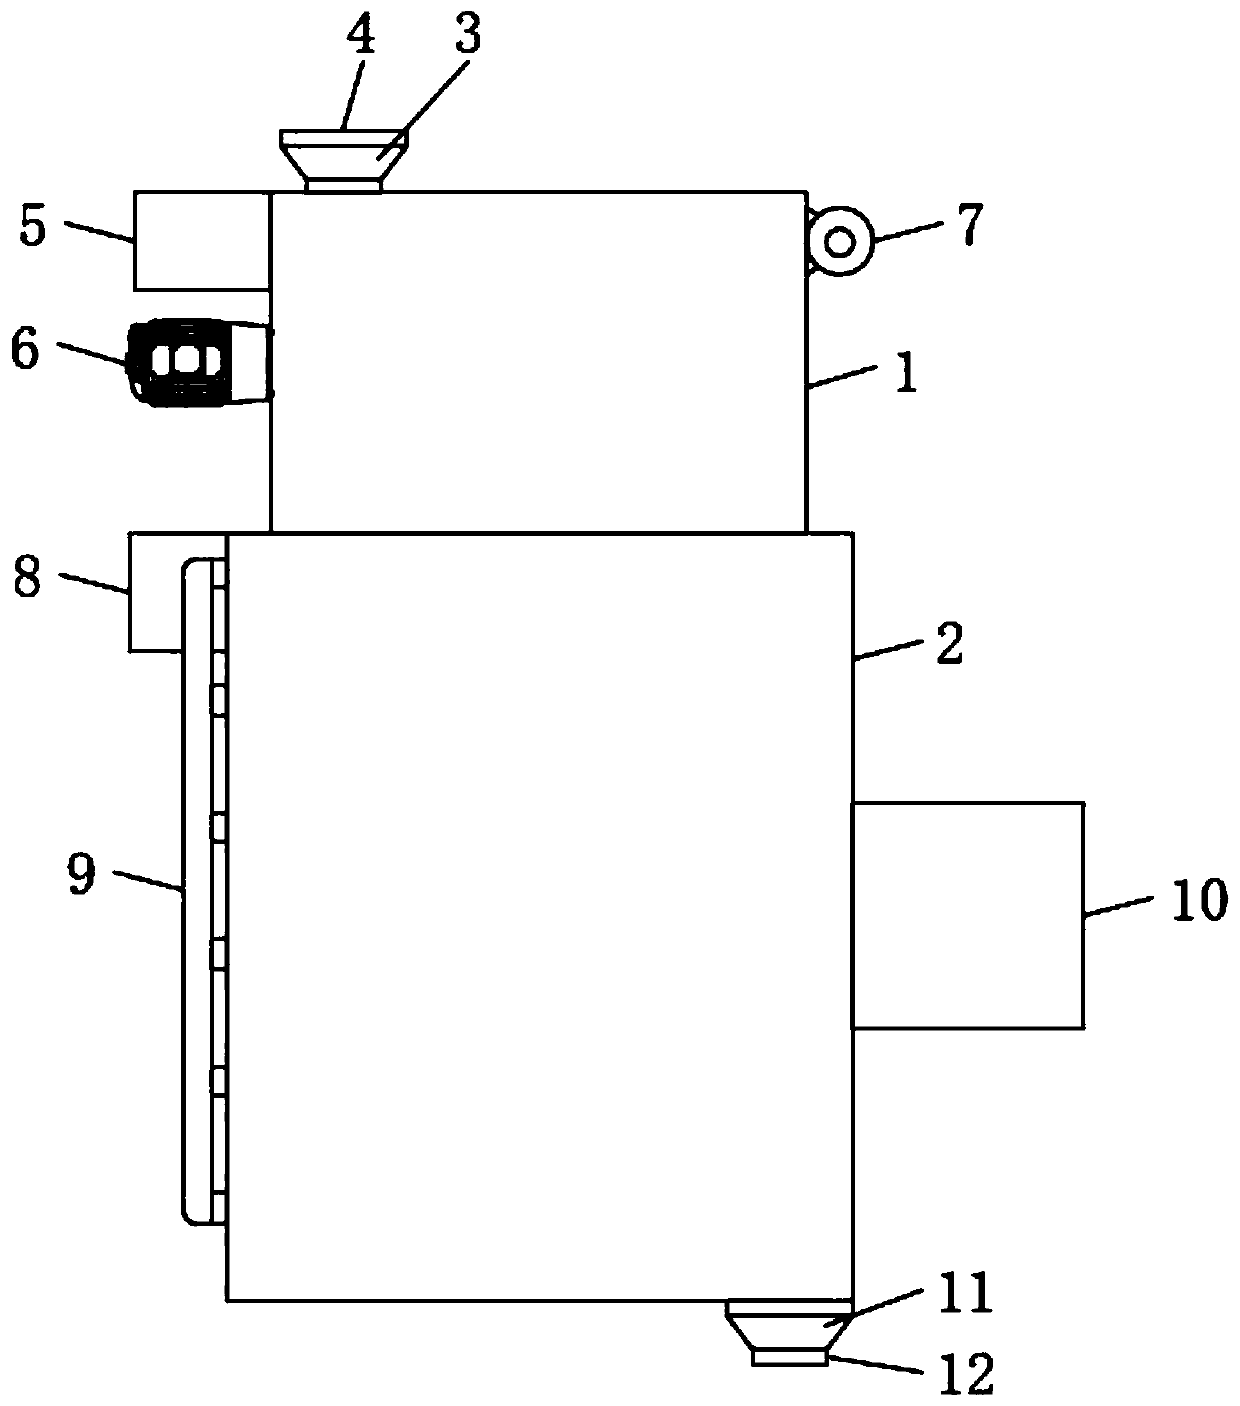 Processing apparatus and method for hibiscus manihot tea